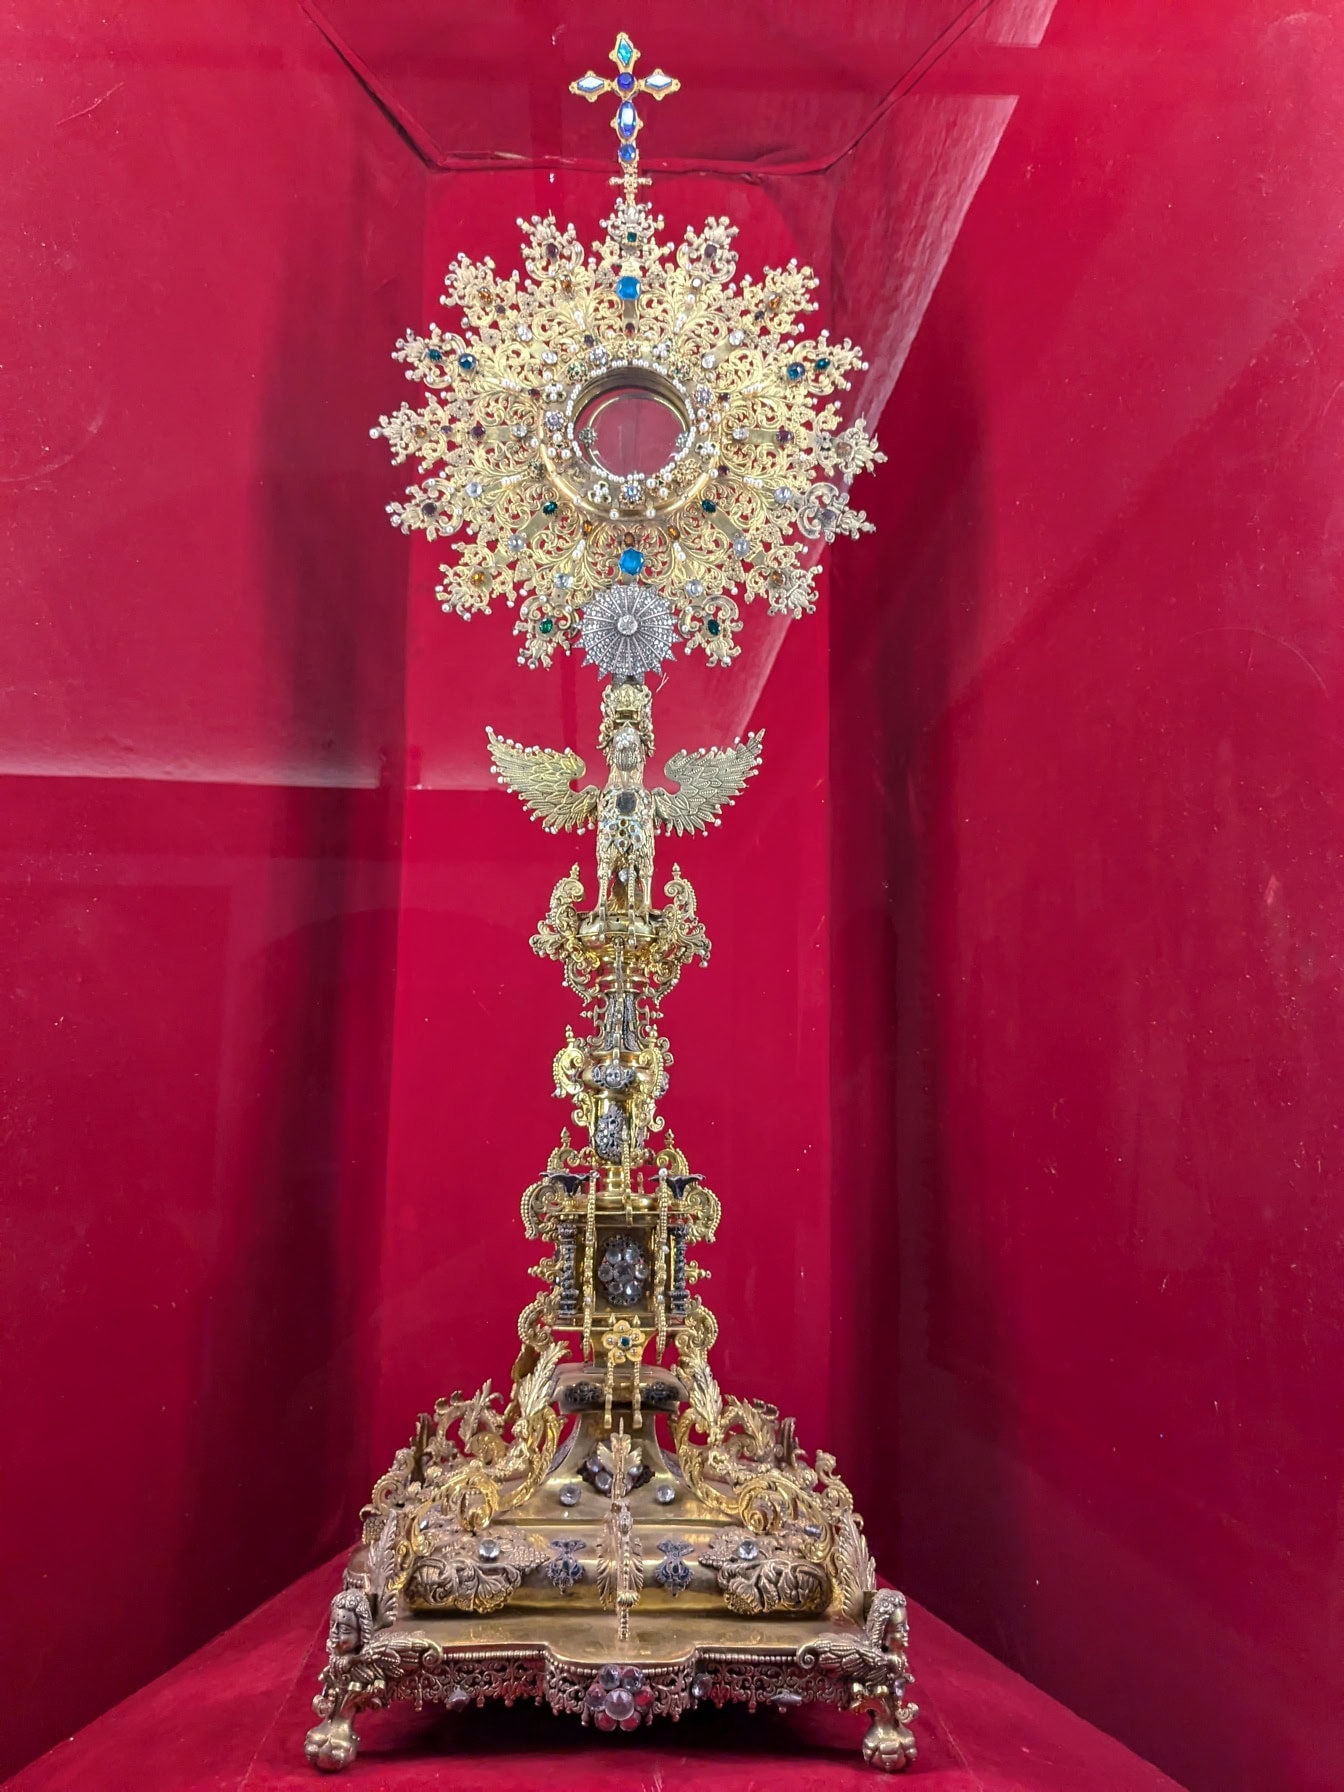 Peruánské náboženské dědictví: zdobený zlatý předmět s křížem, vystavený v jezuitském kostele v Arequipě v Peru